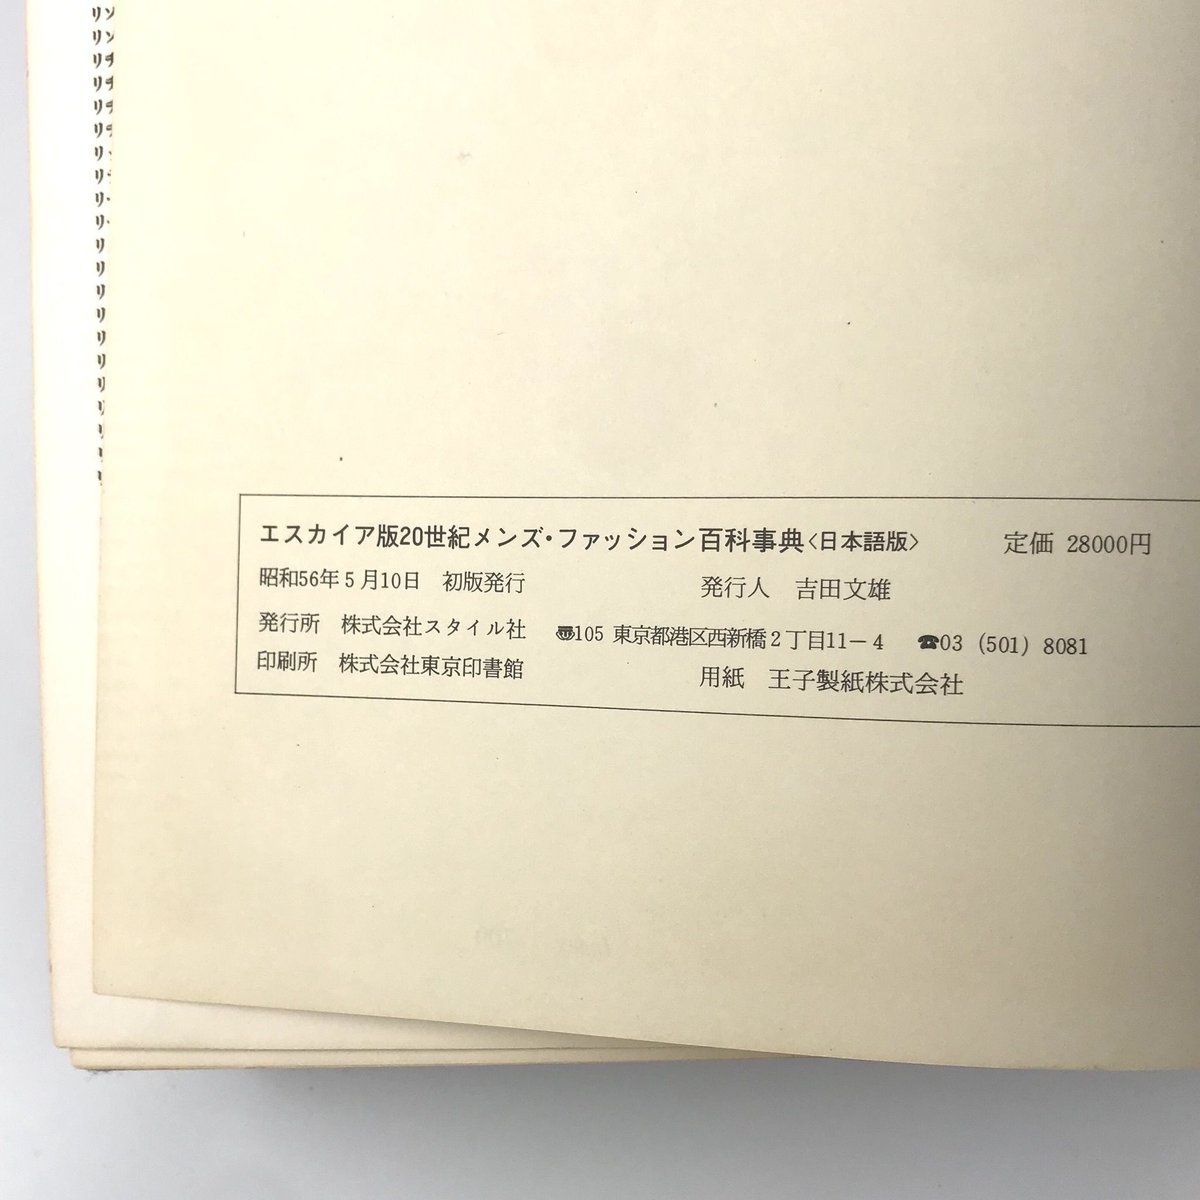 希少　エスカイア版20世紀メンズ・ファッション百科事典〈日本語版〉ファッション誌